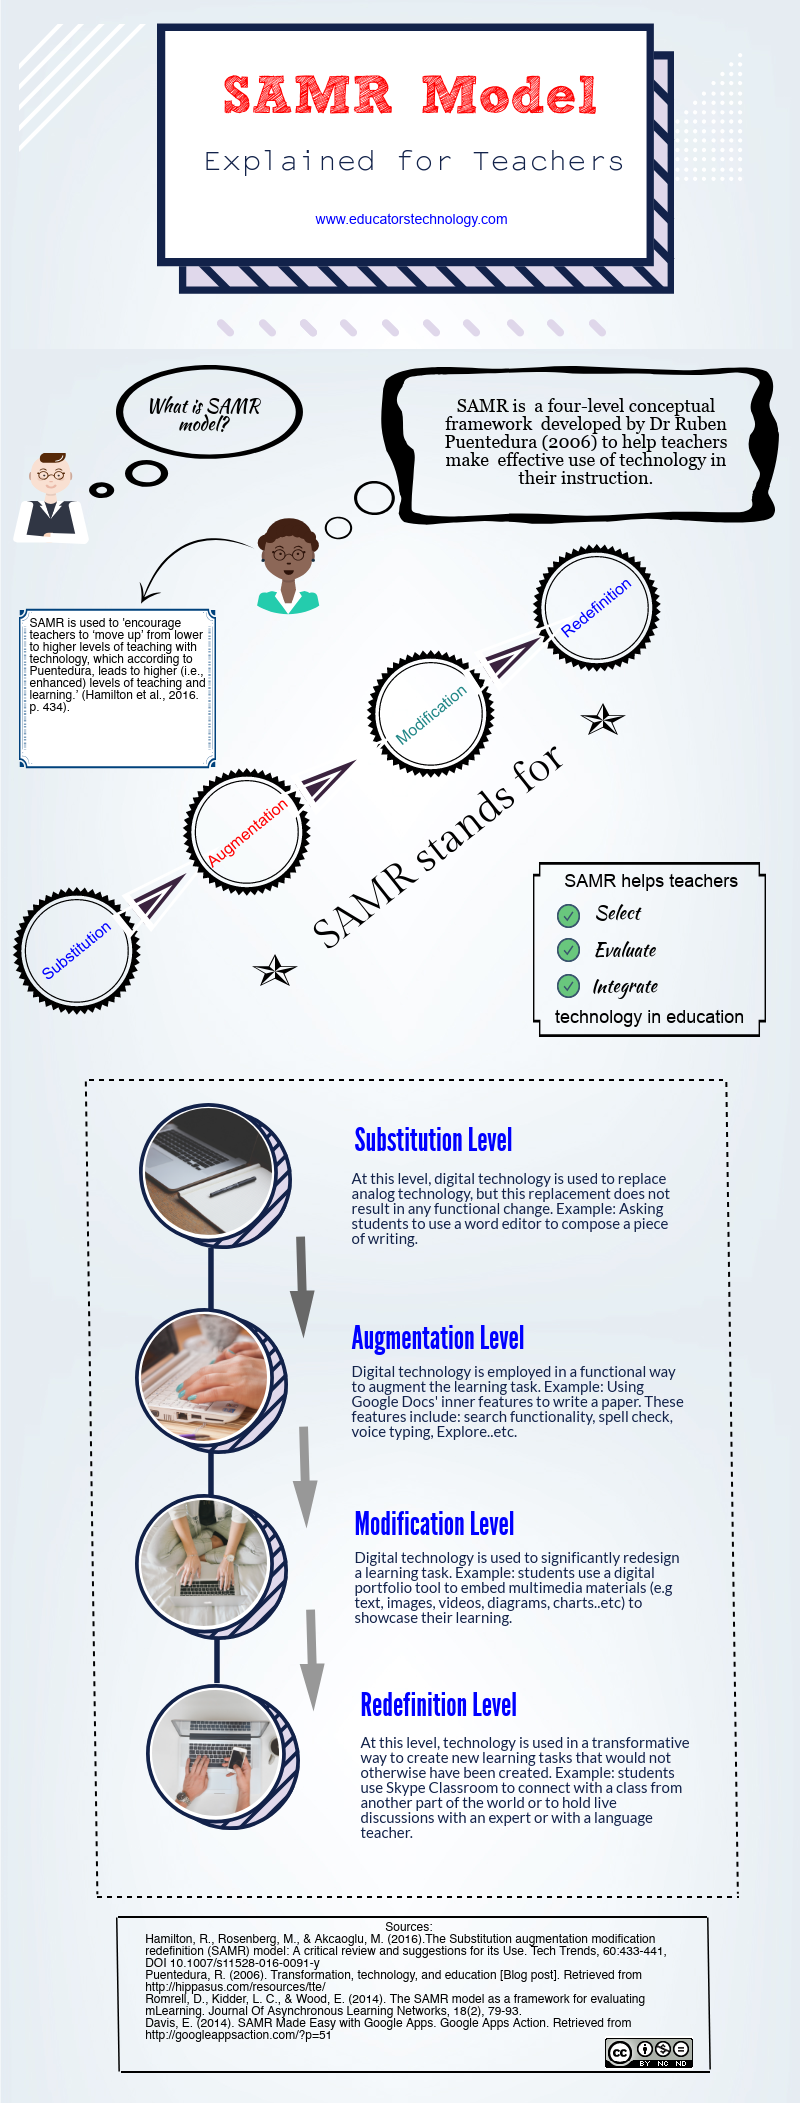 Una práctica infografía que explica el modelo SAMR para profesores